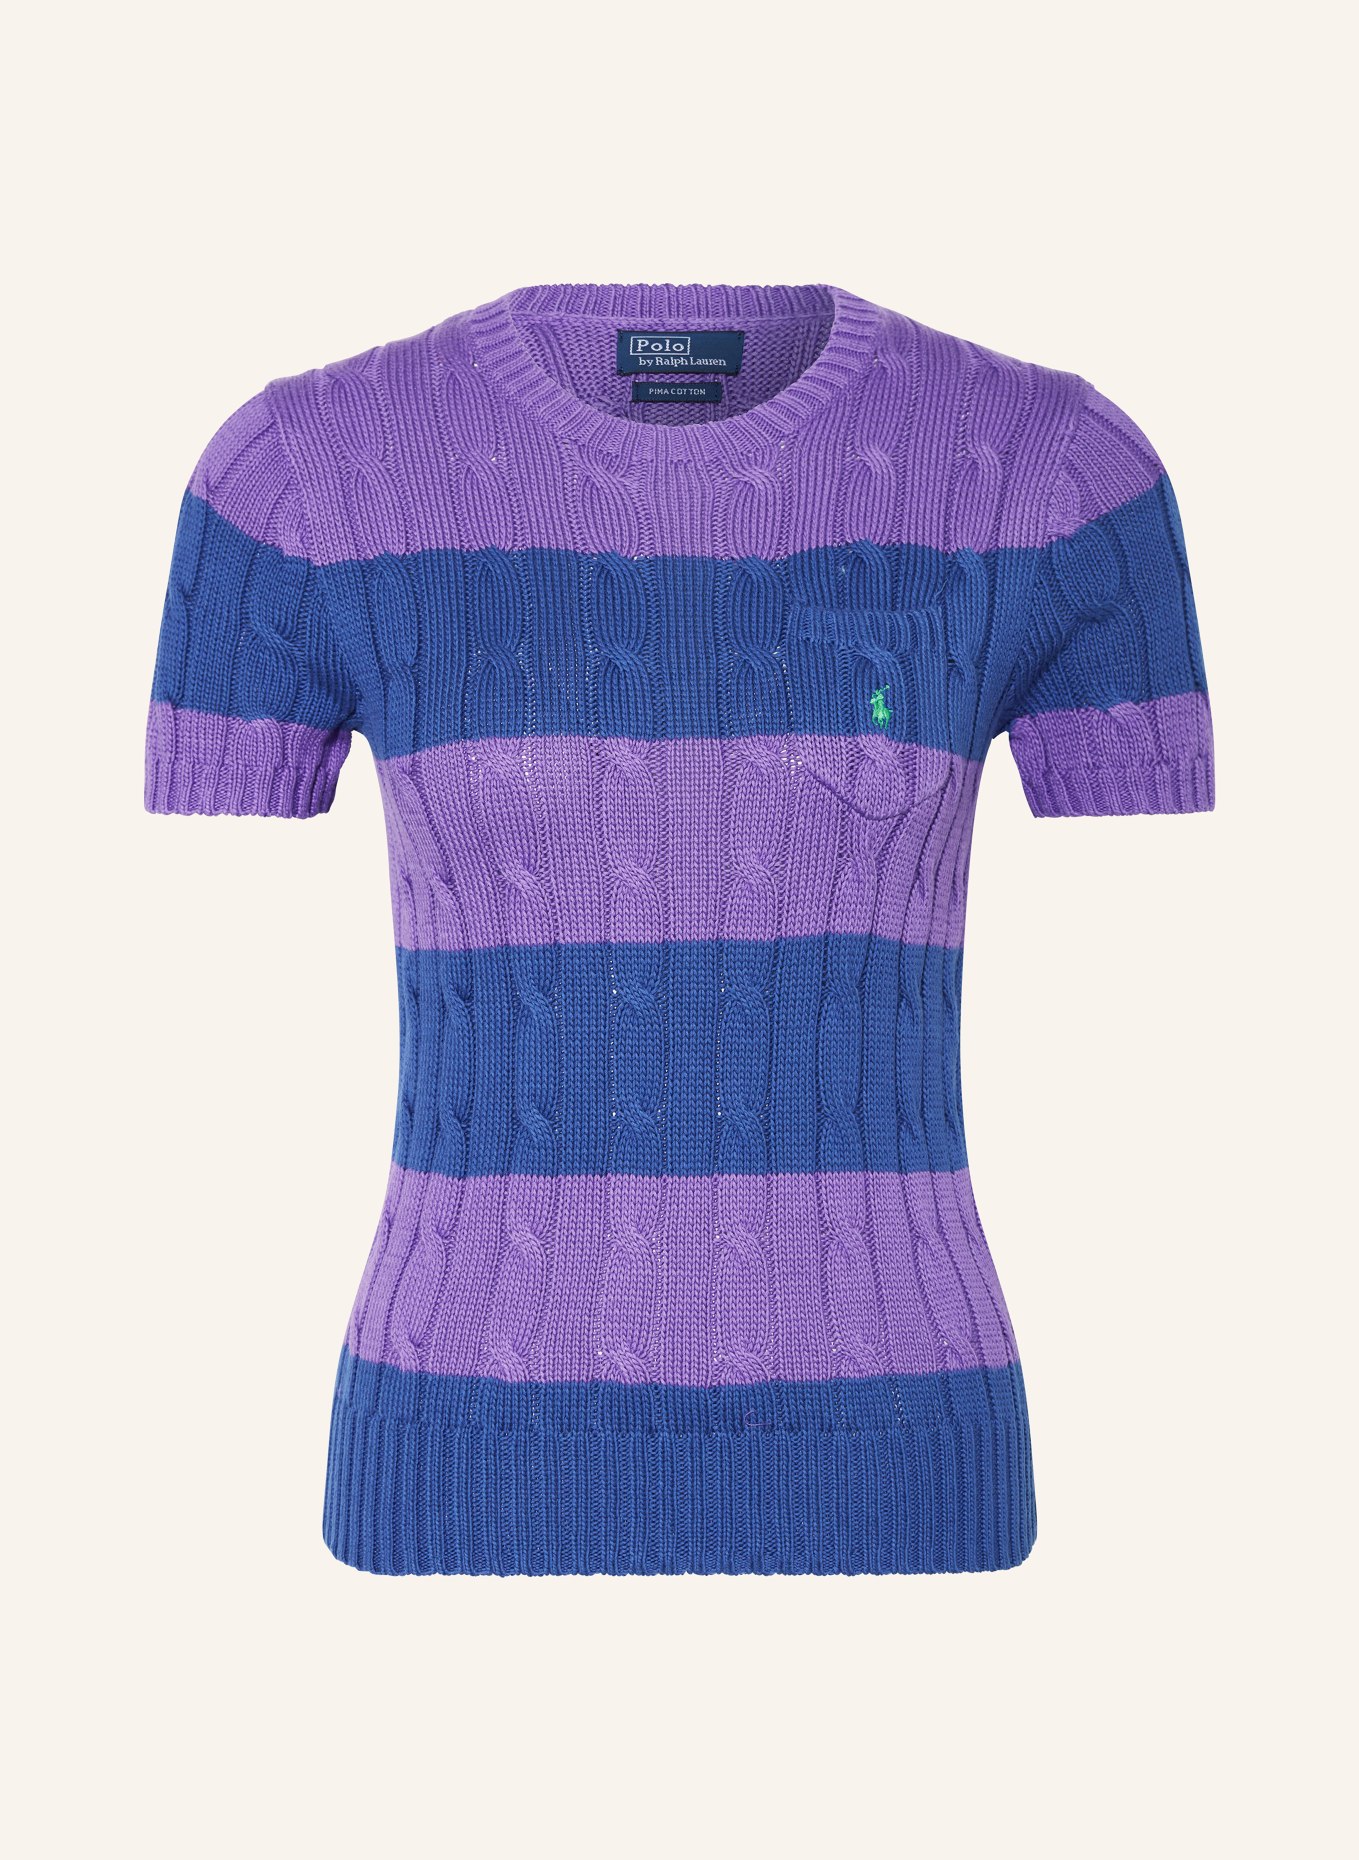 POLO RALPH LAUREN Knit shirt, Color: PURPLE/ DARK BLUE (Image 1)